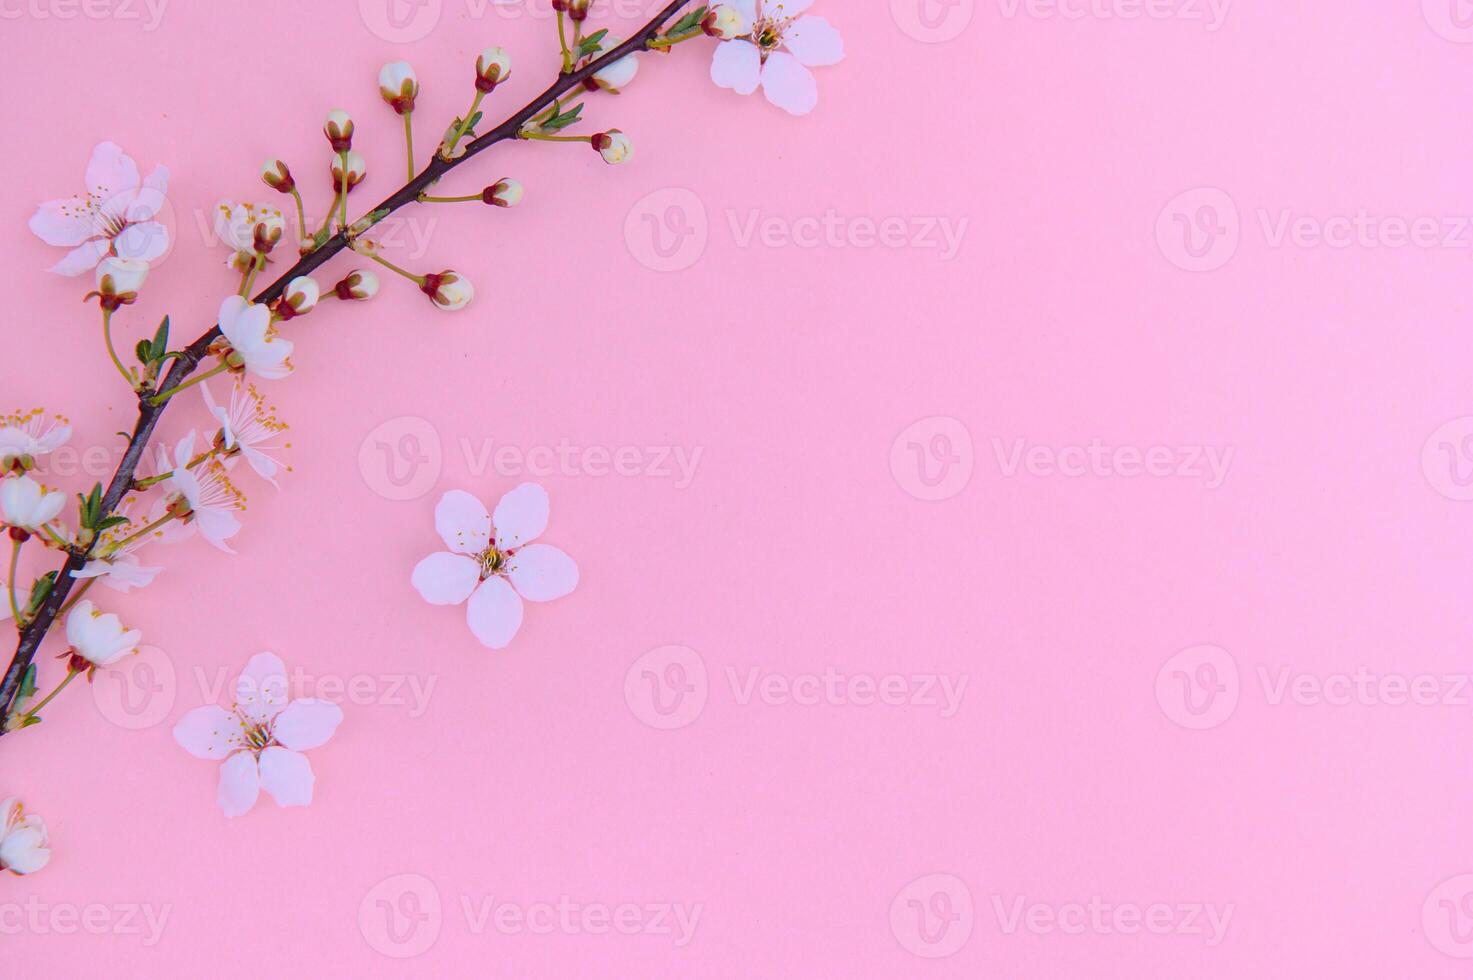 Cerise arbre fleurir. avril floral la nature et printemps Sakura fleur sur coloré Contexte. bannière pour 8 mars, content Pâques avec endroit pour texte. printemps concept. Haut voir. plat allonger photo